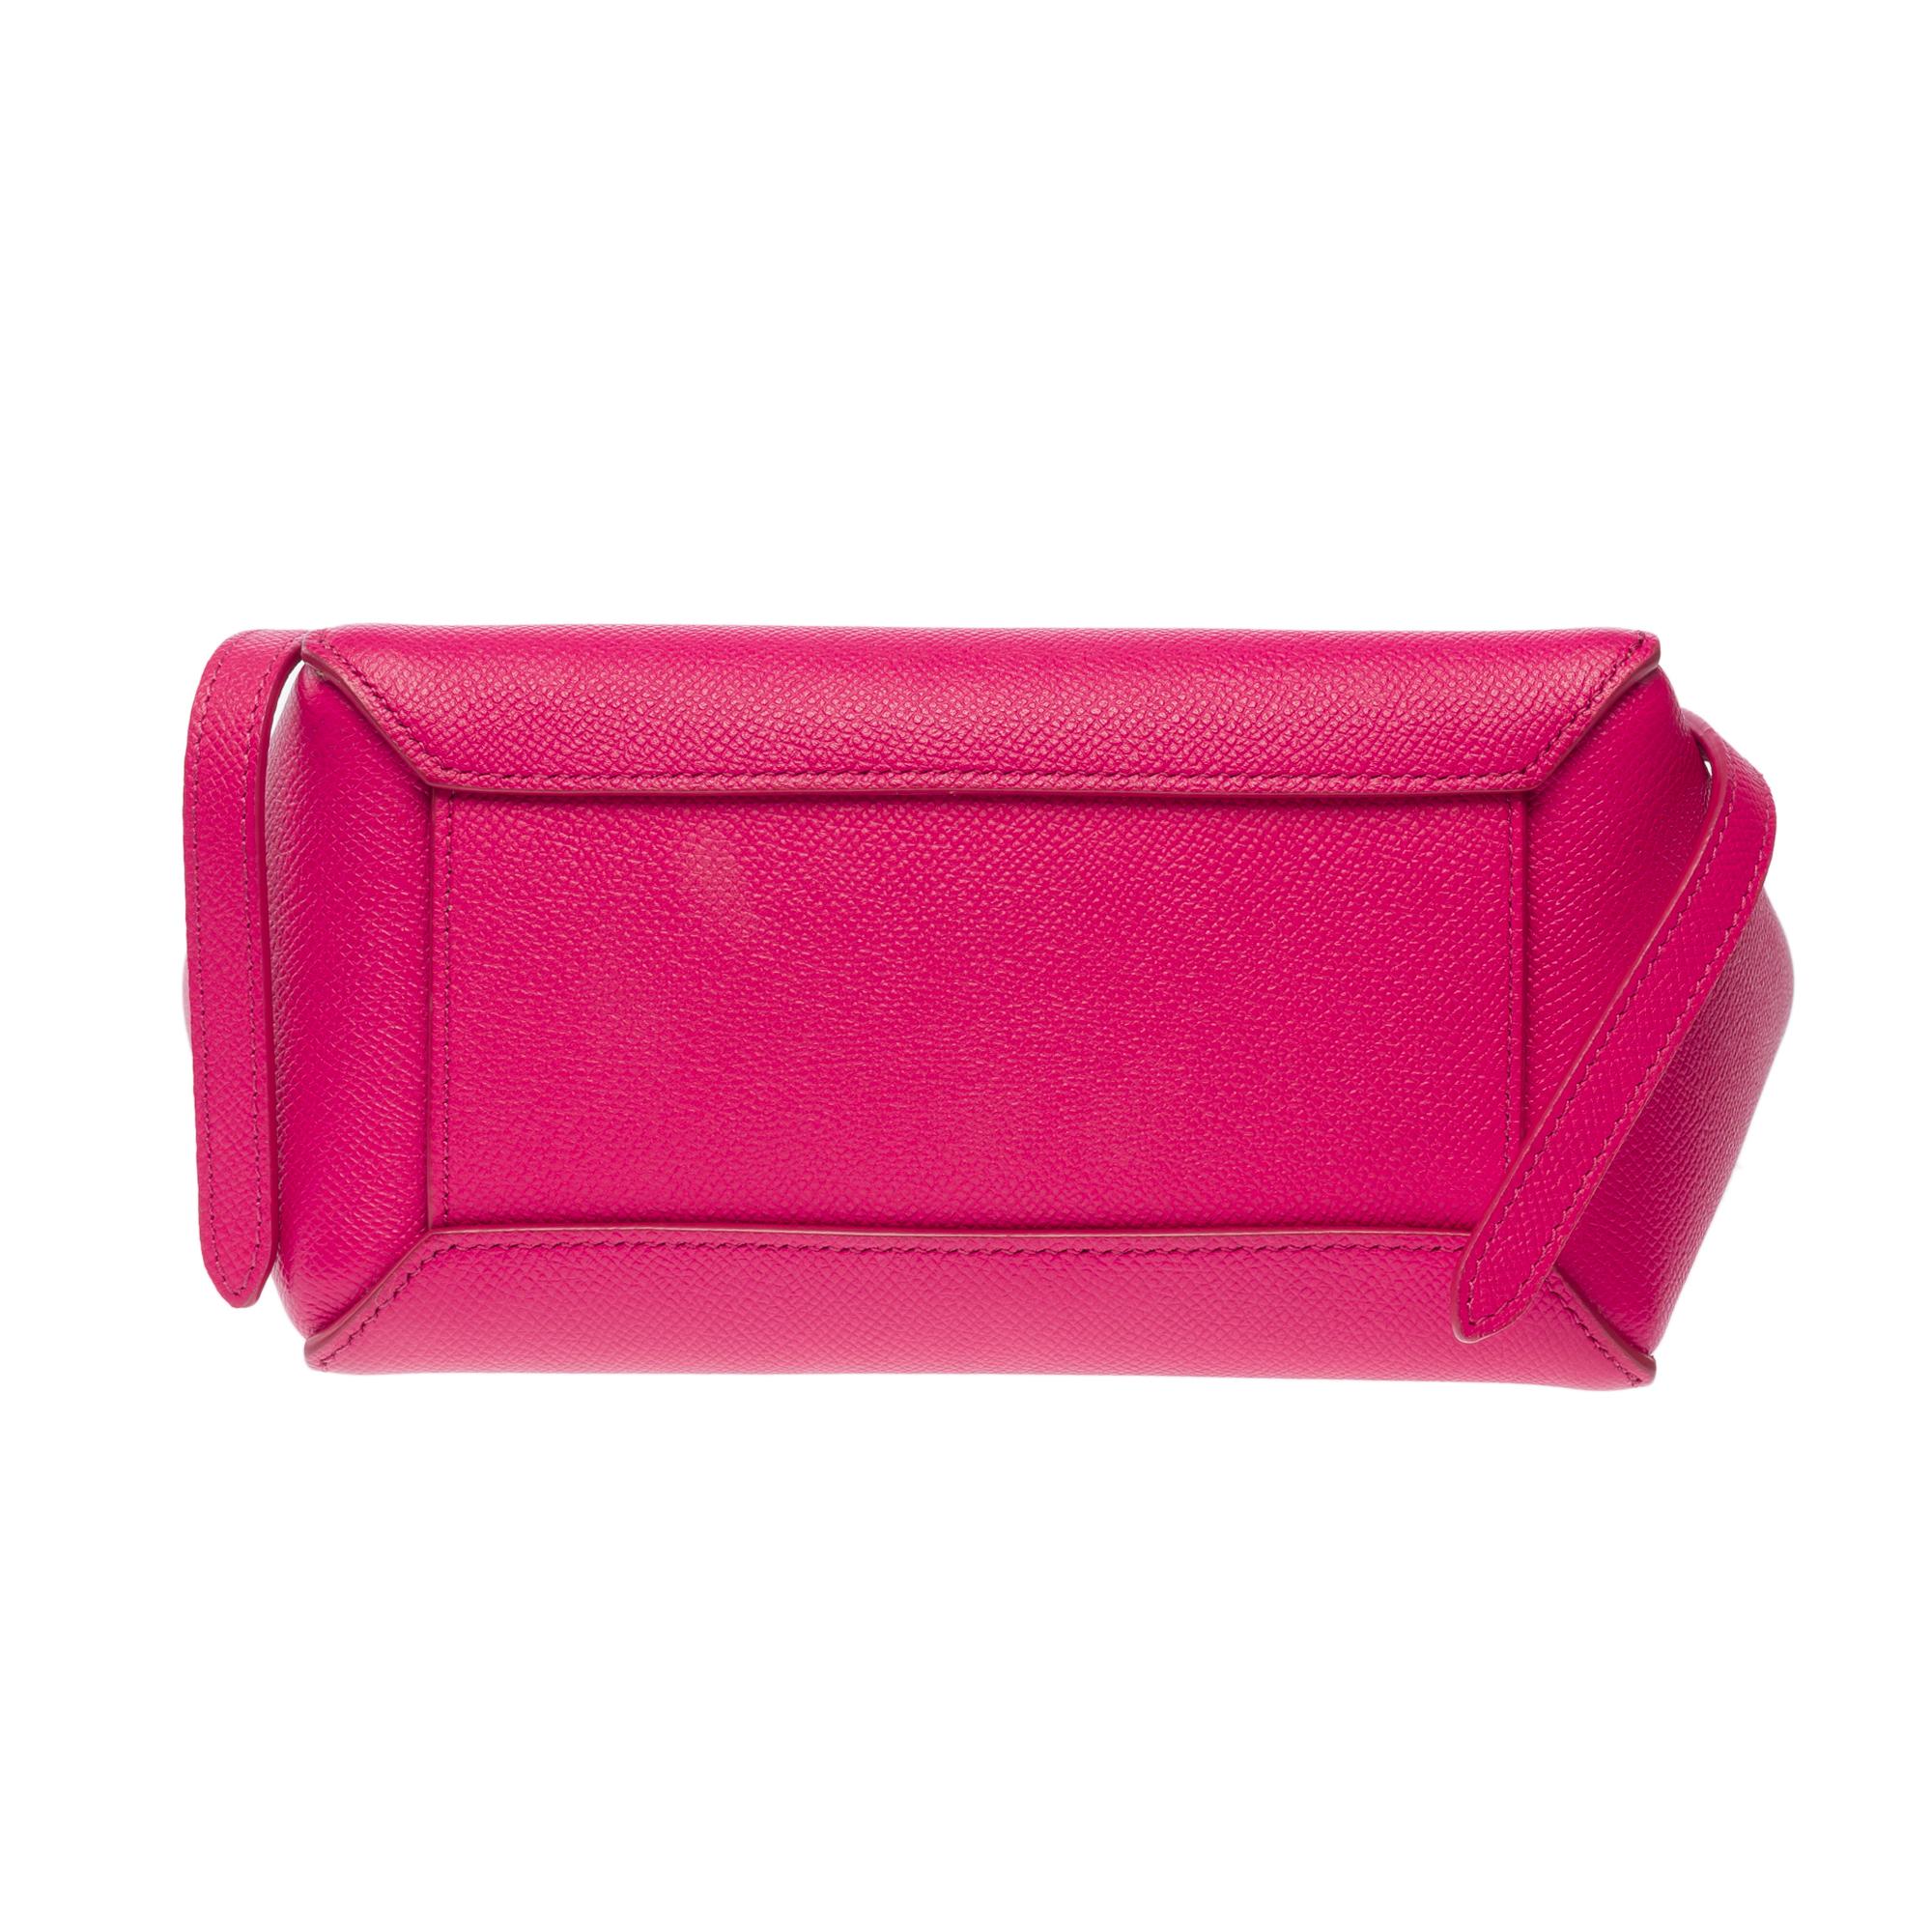 Celine Belt Nano handbag strap in pink calf leather, GHW 7